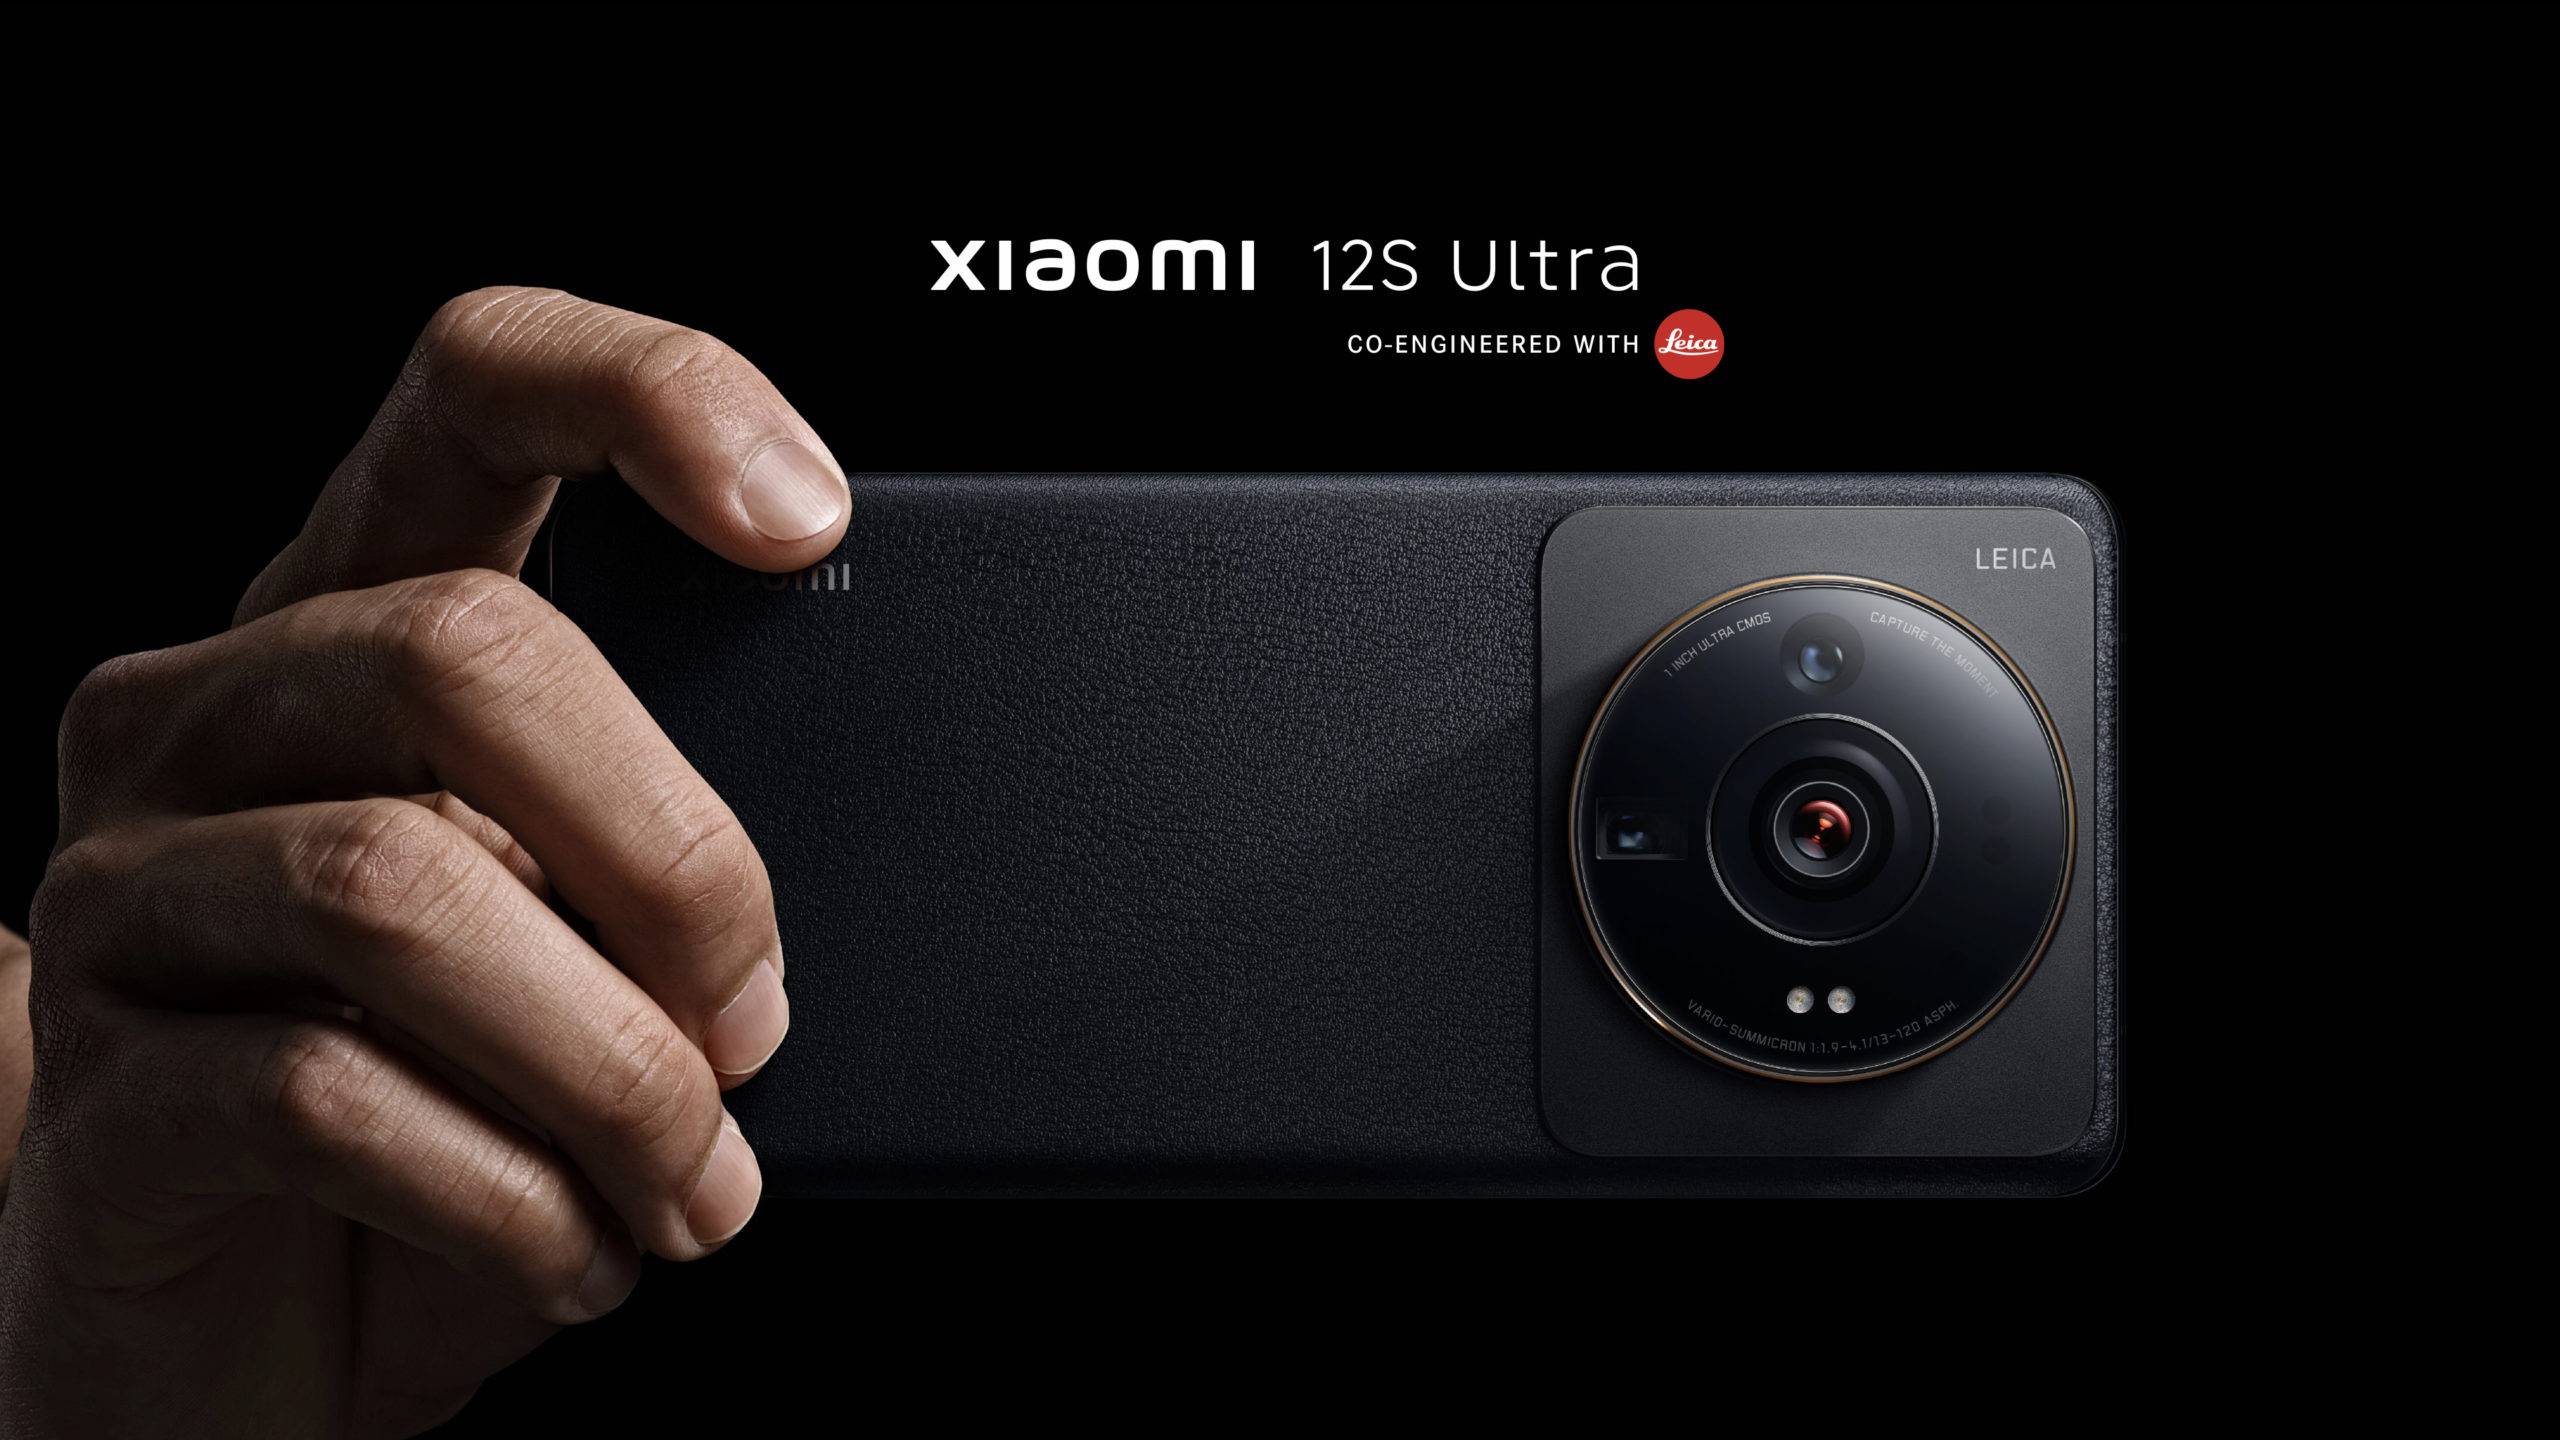 Xiaomi put a huge camera sensor in its new Mi 12S Ultra flagship smartphone  - The Verge